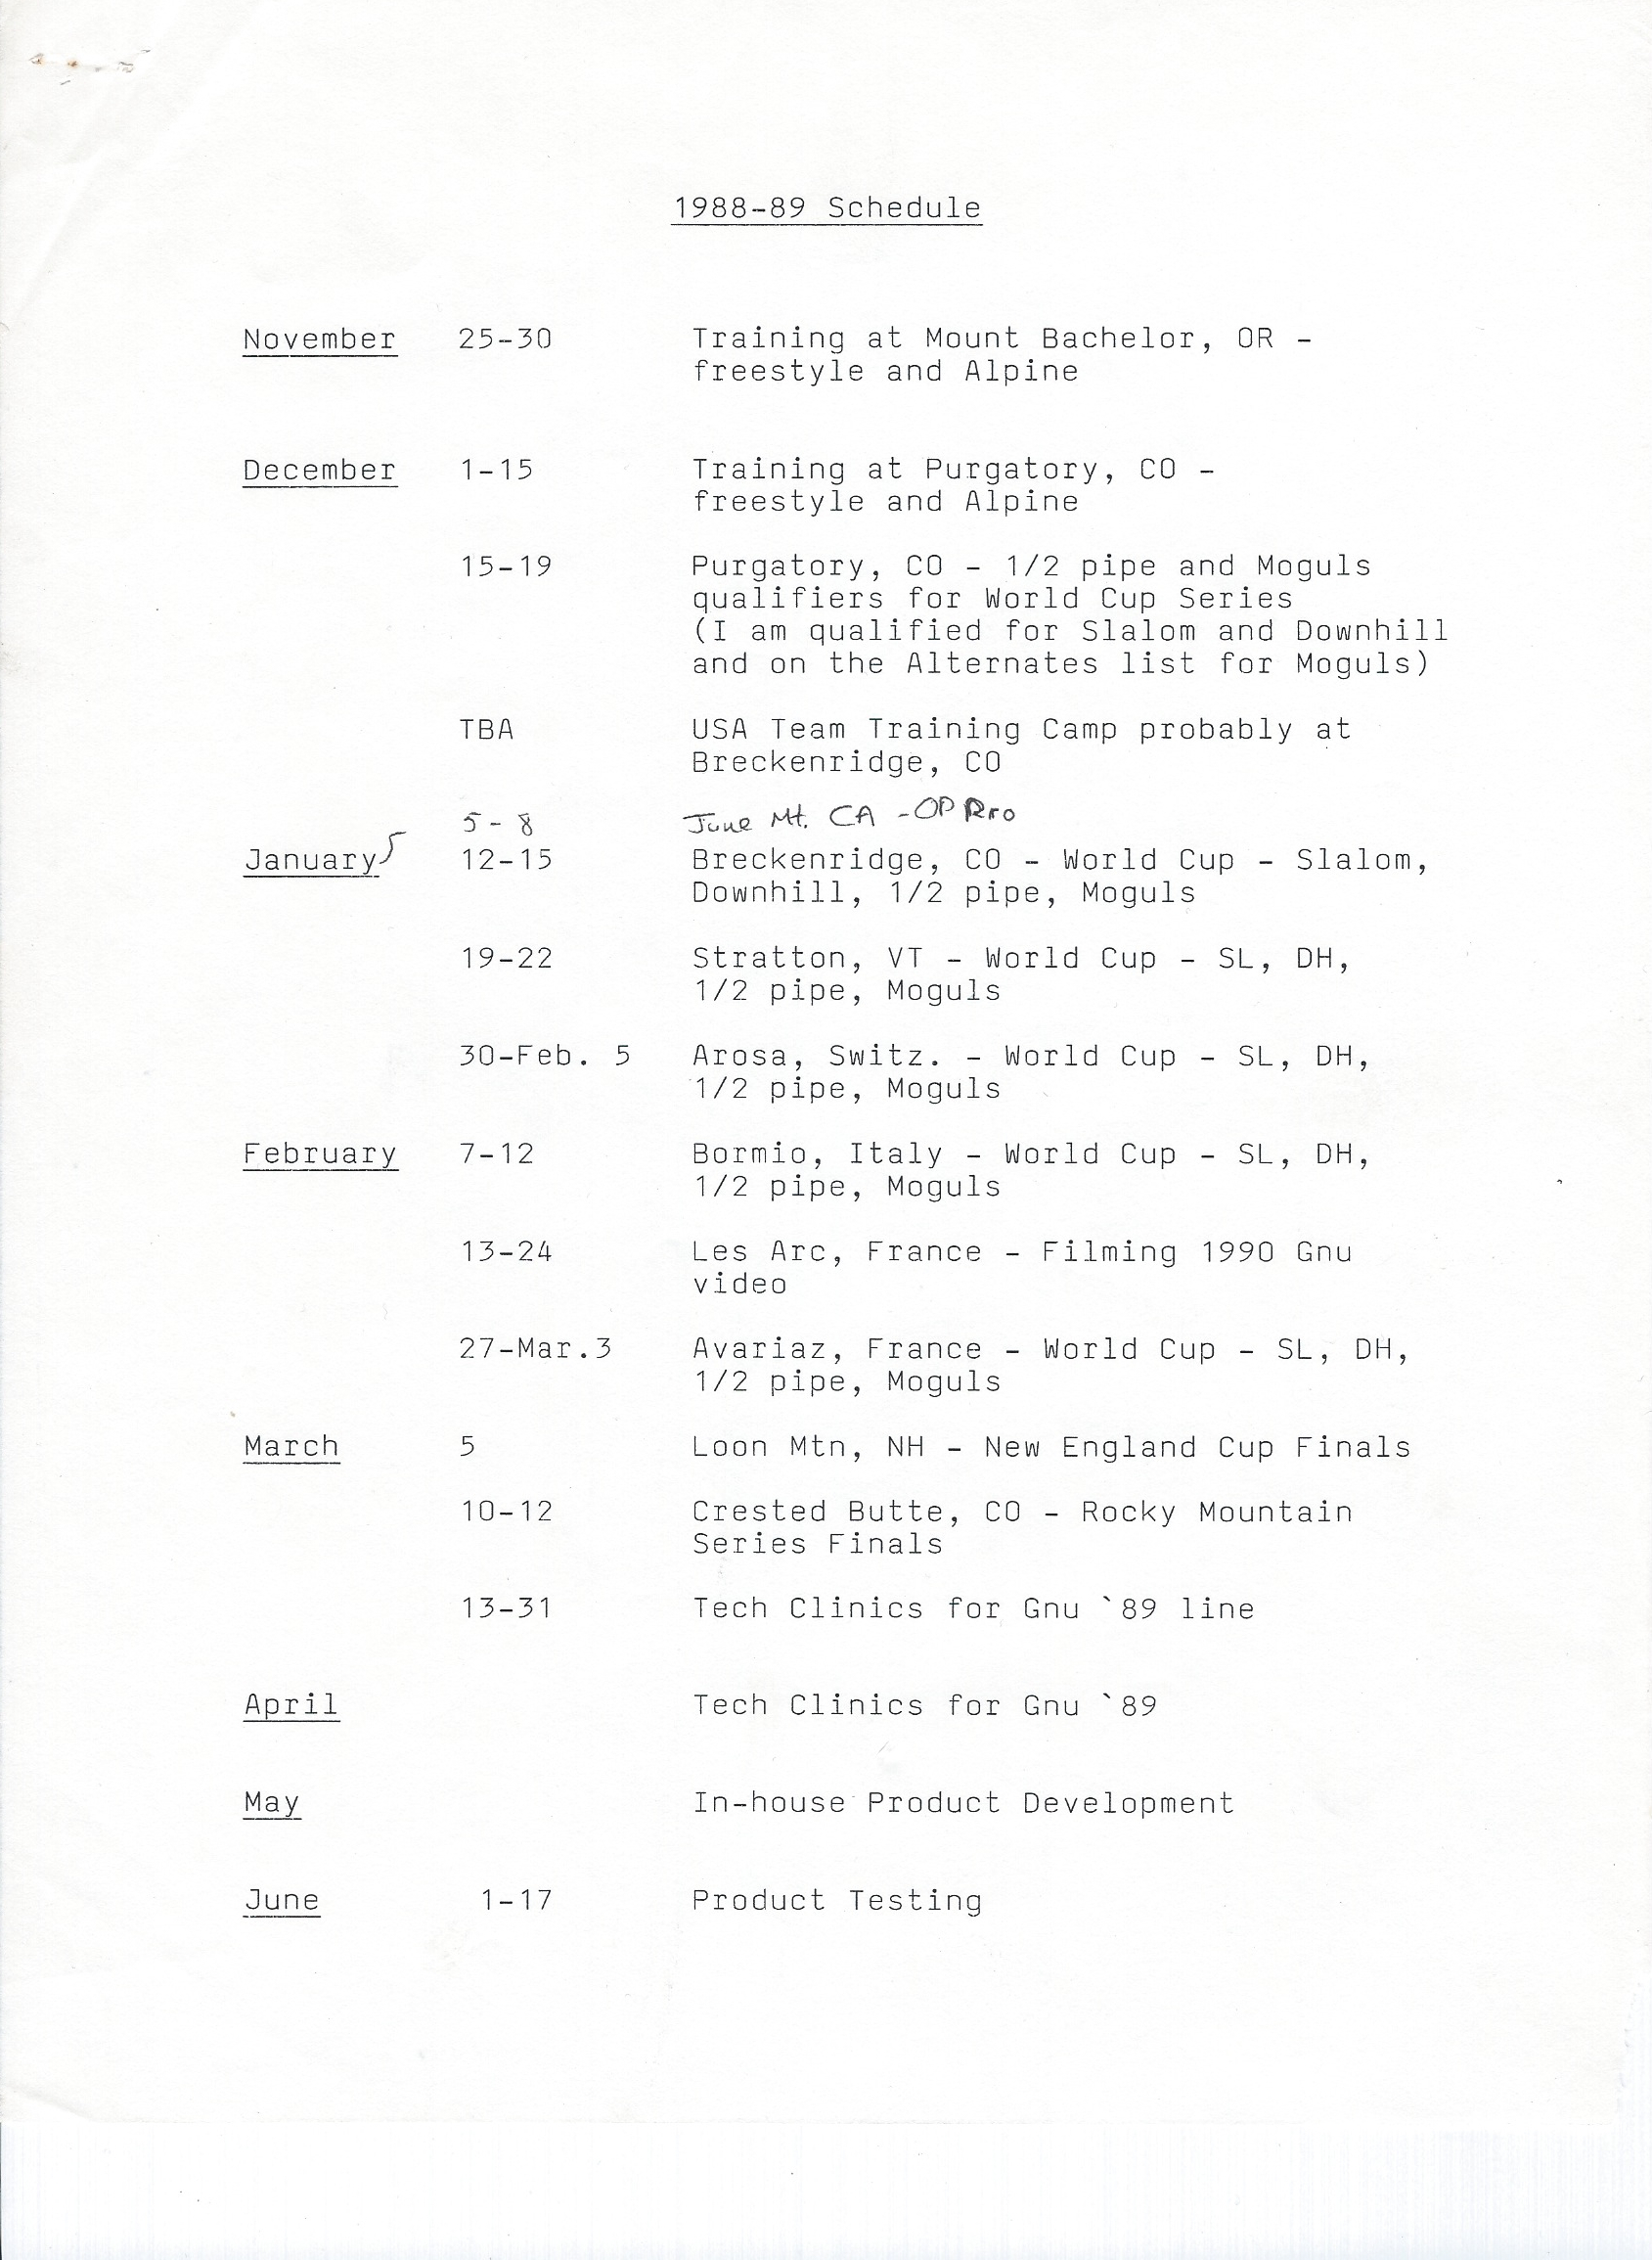 88-89 Schedule.jpg